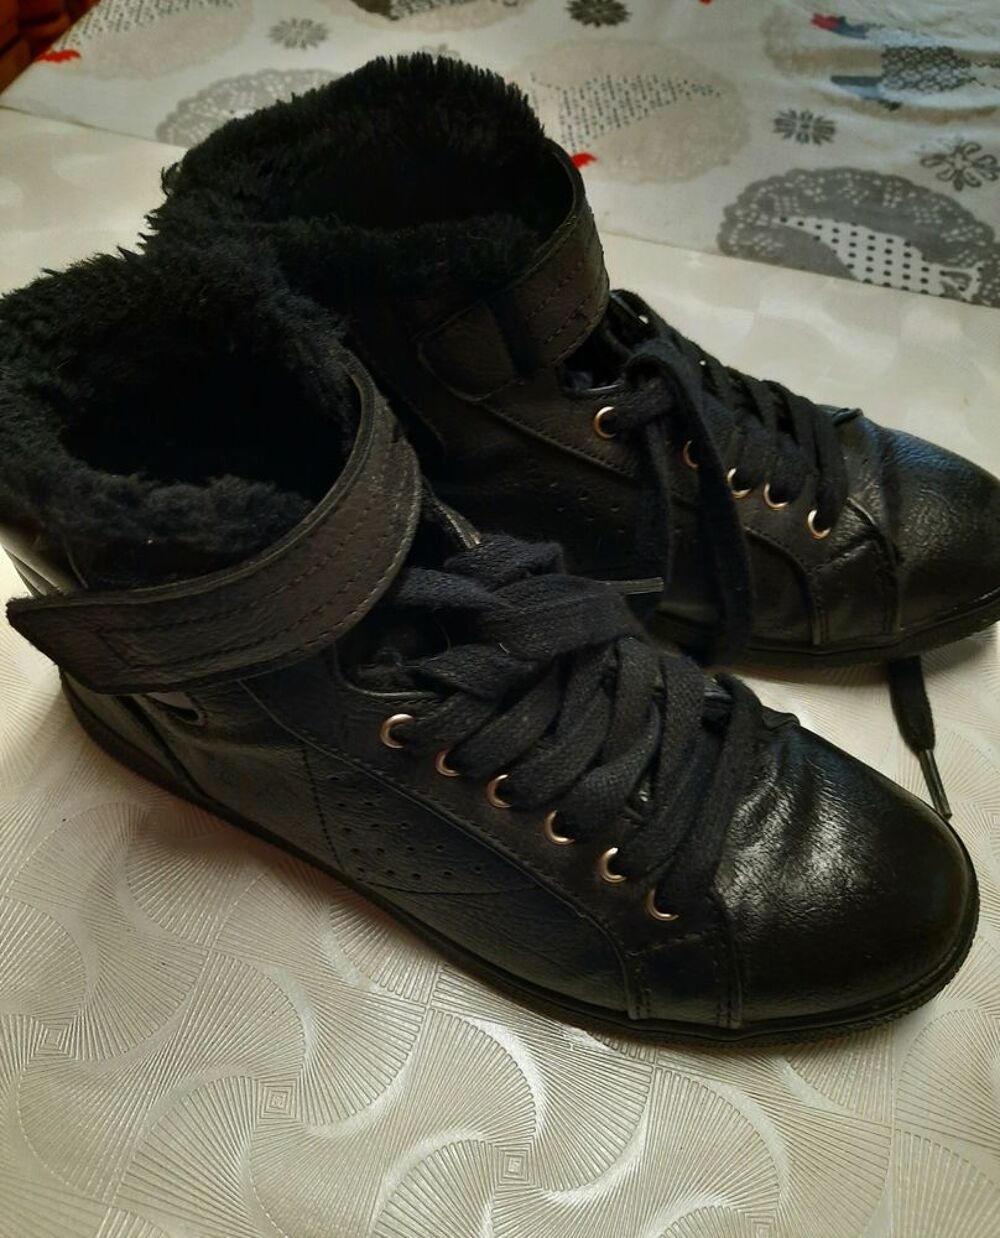 Bottines - boots noir int&eacute;rieur fourr&eacute; chaud P 36 Chaussures